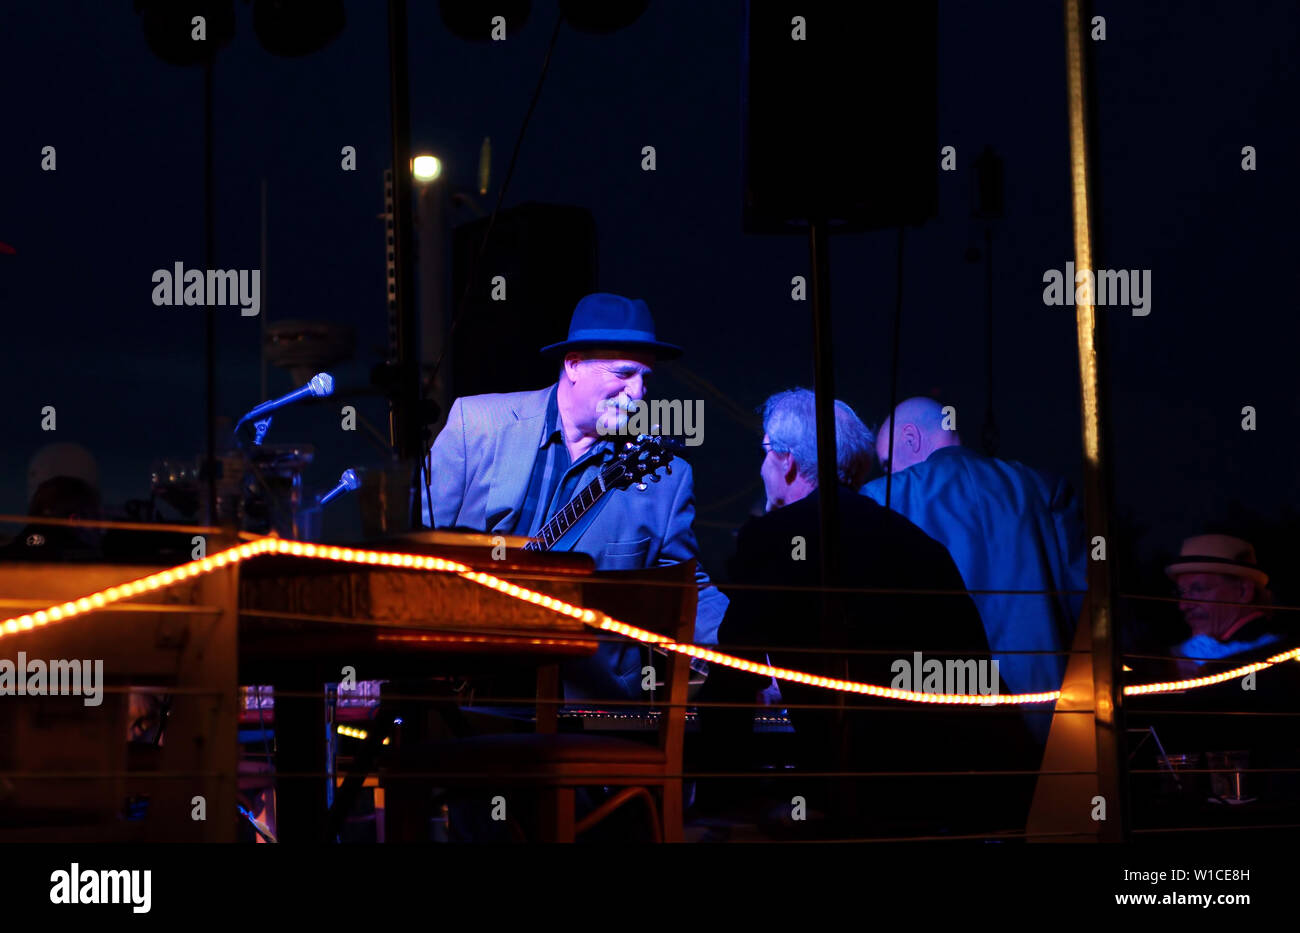 Middletown, CT USA. Apr 2015. Ältere Musiker zu einem kurzen Gespräch Pause zwischen den Leistungen in der Nacht. Stockfoto